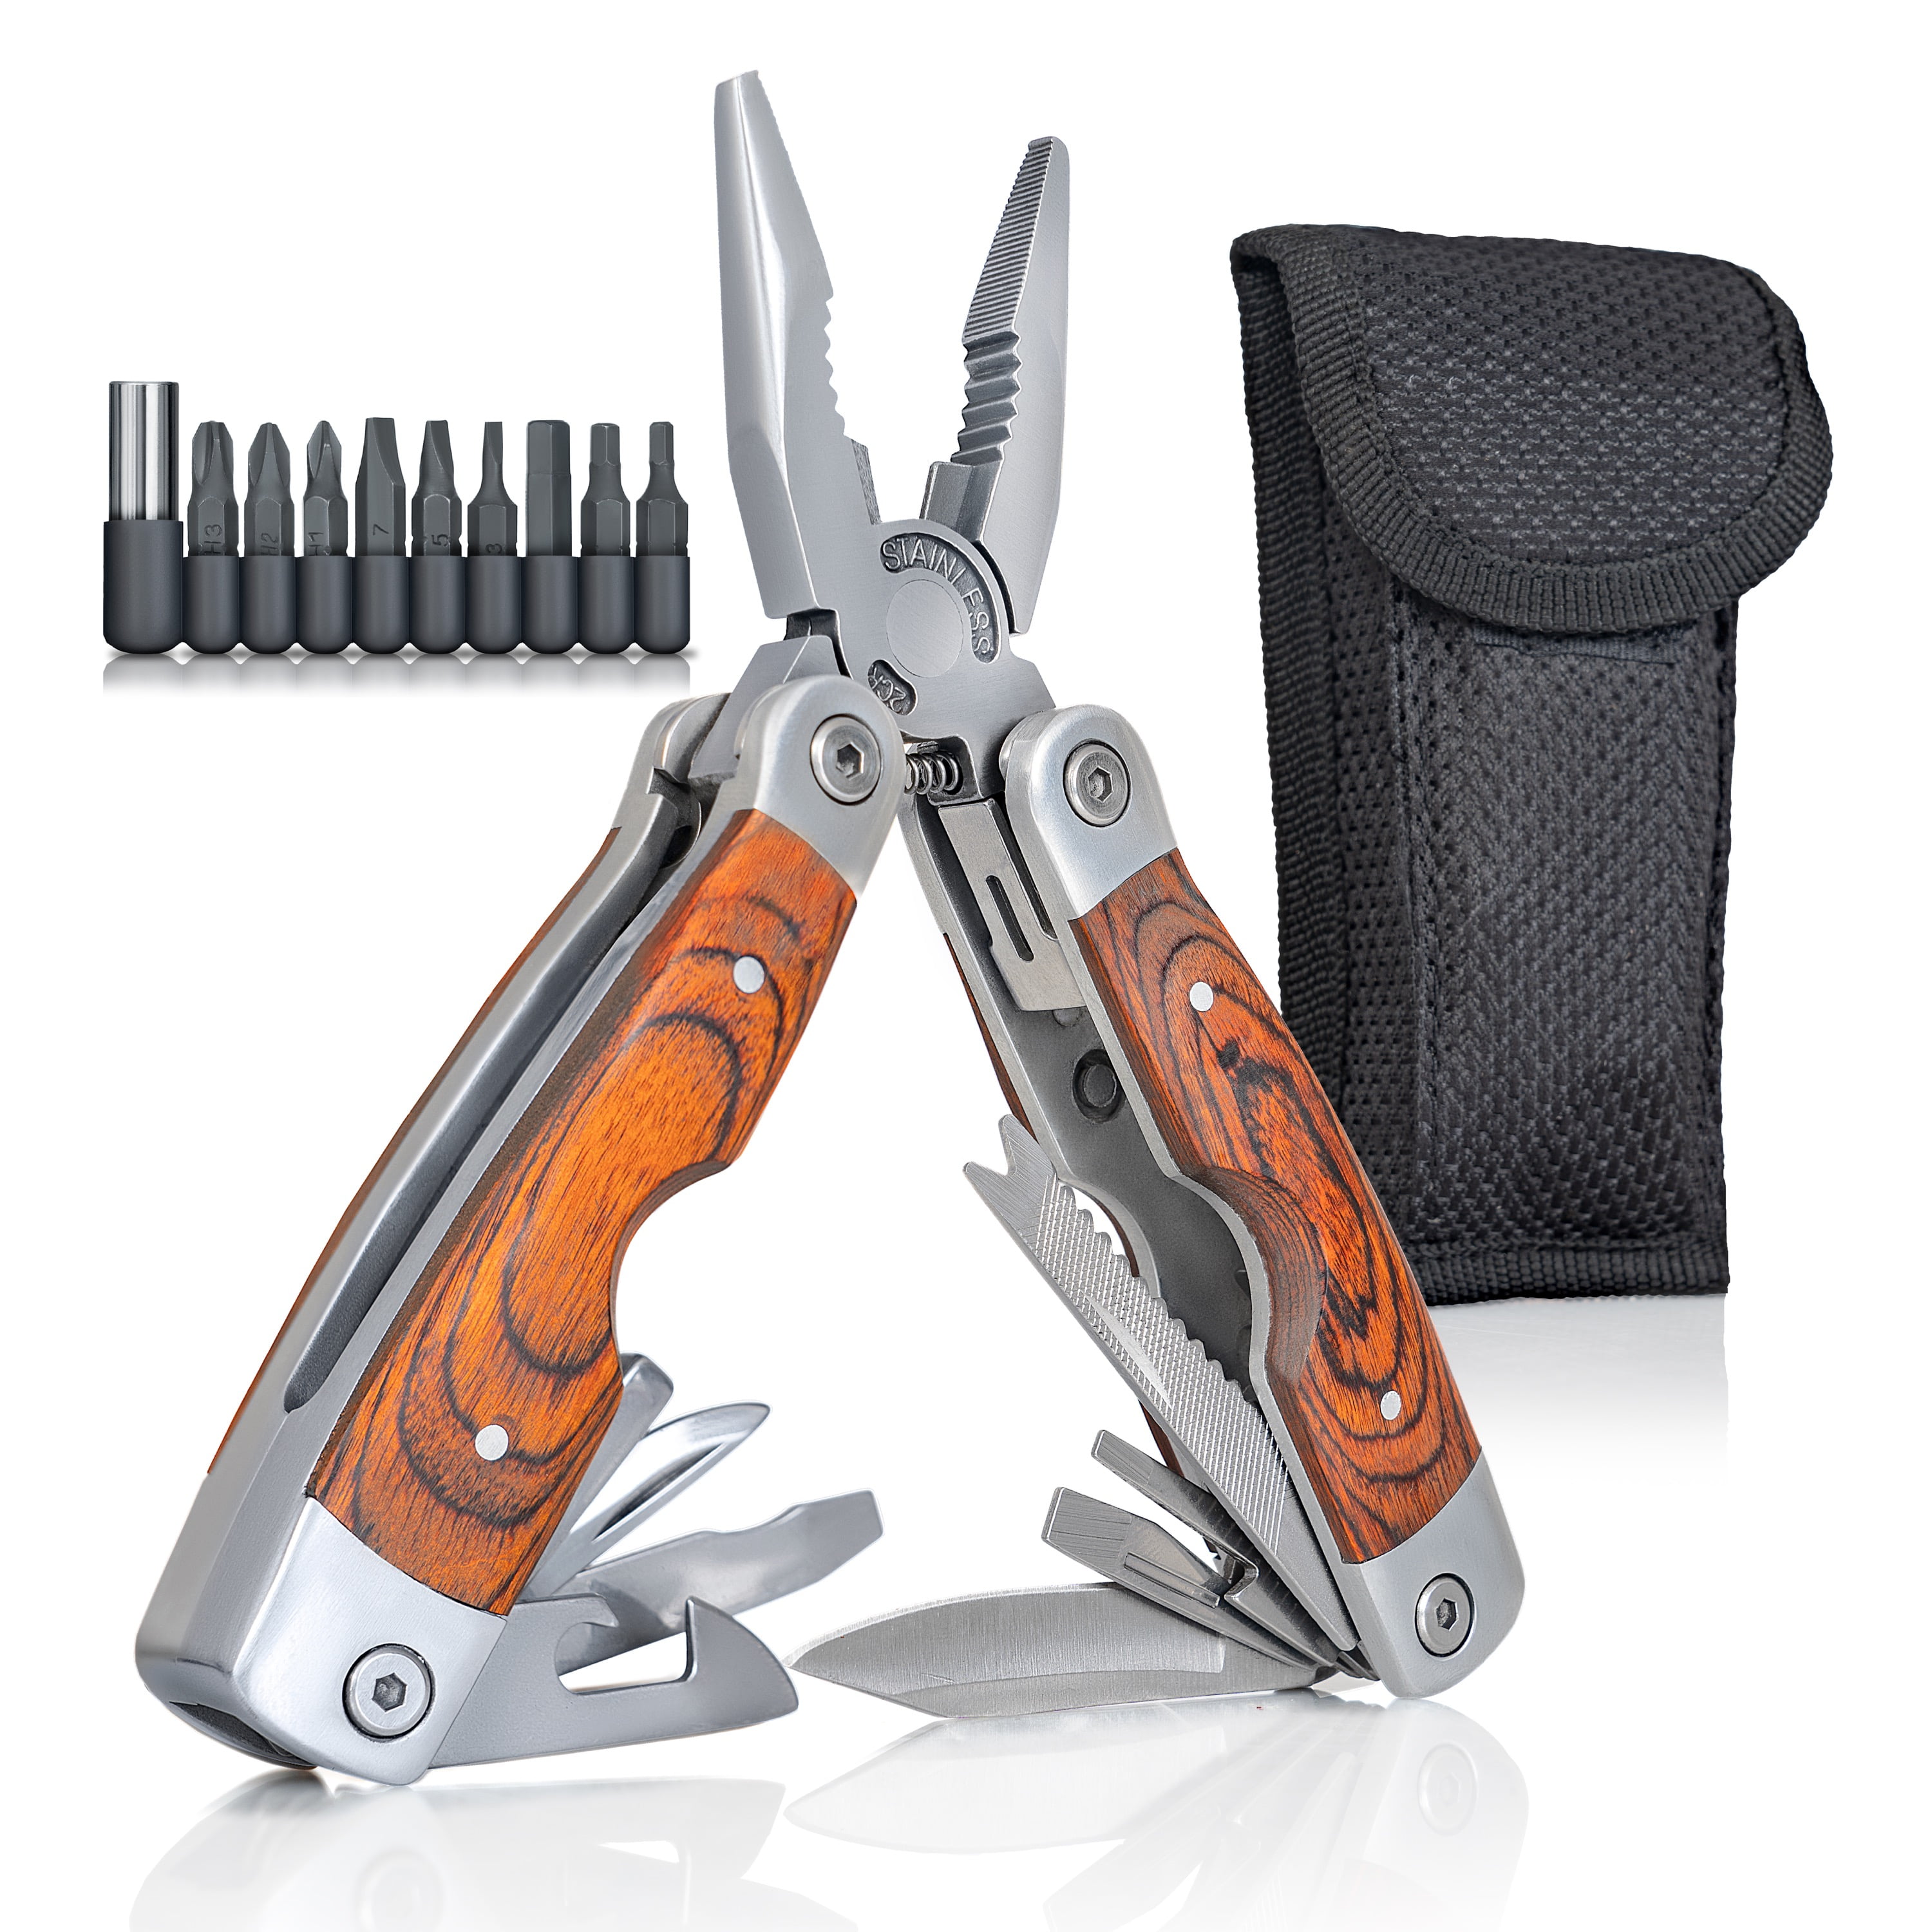 FREE Nylon Sheath Premium Pocket Stainless Steel MultiTool 14 Tools 